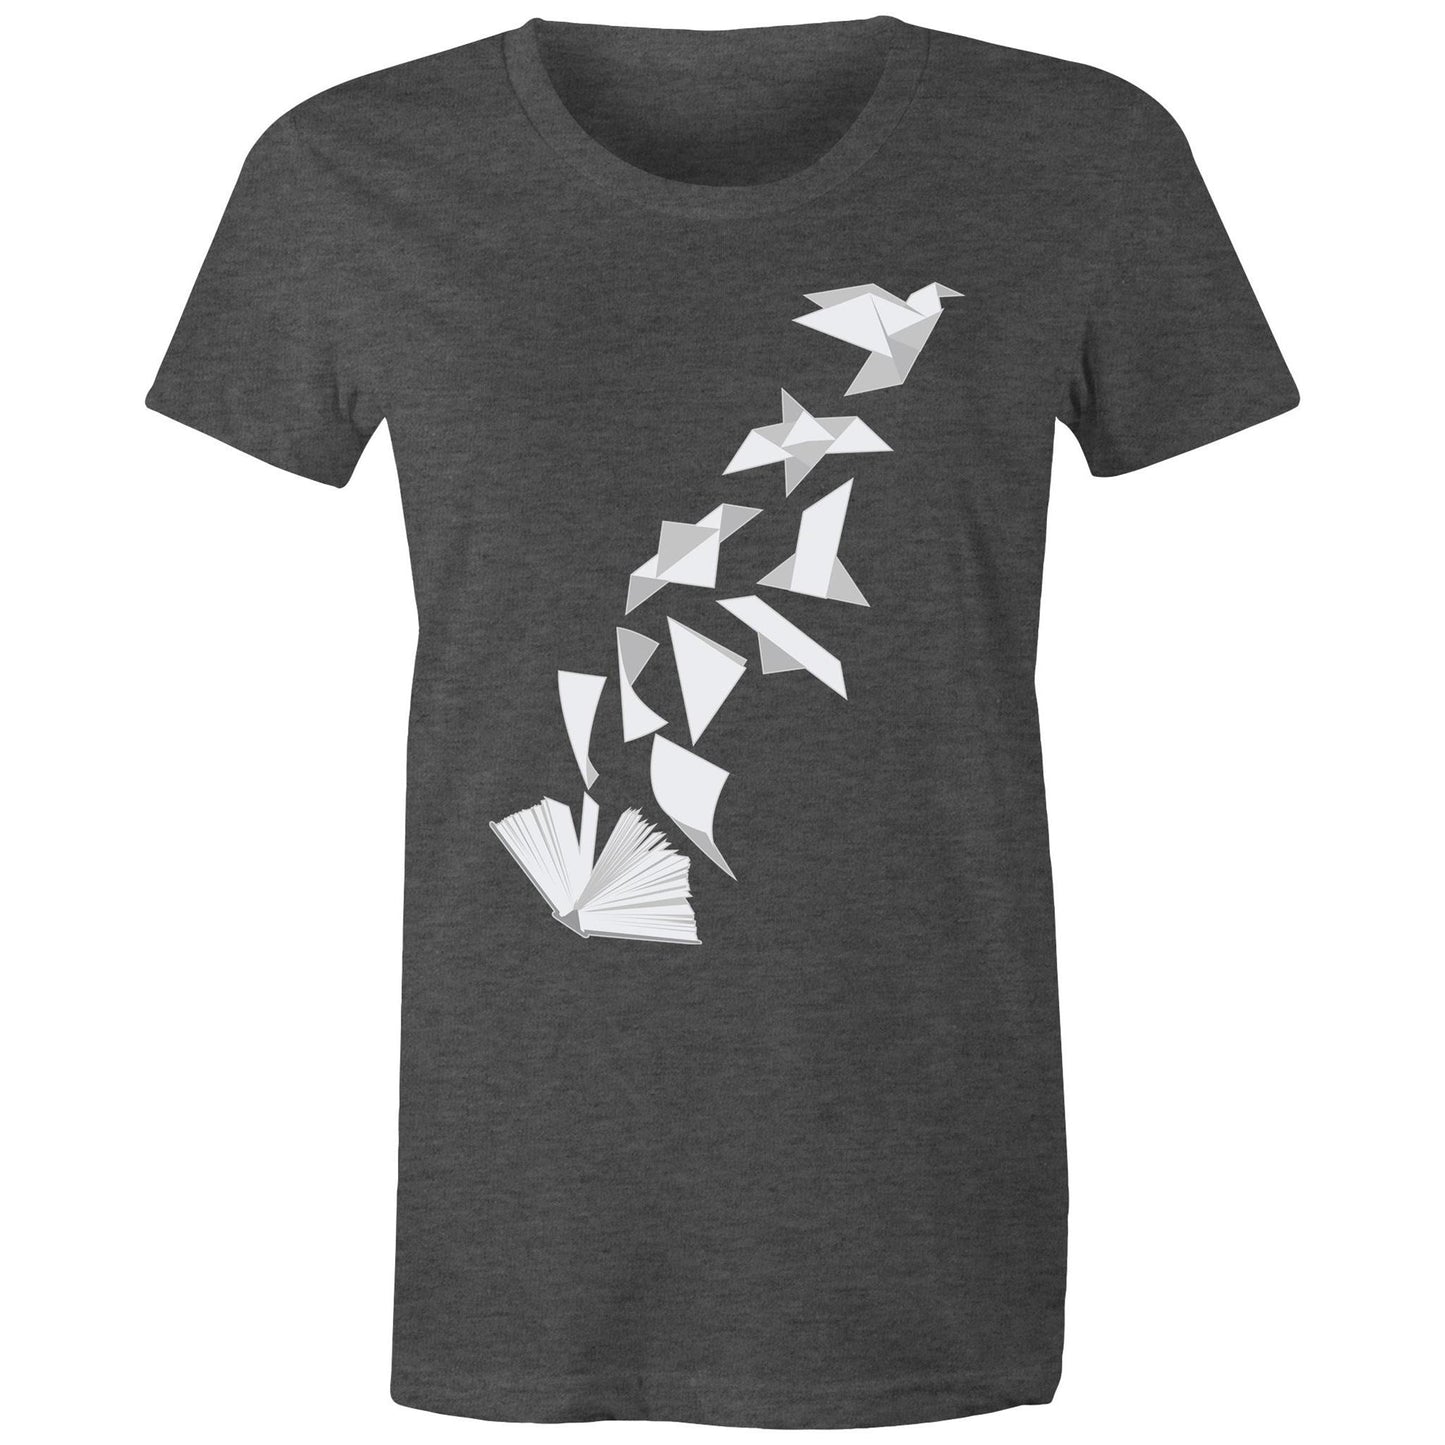 Book to Bird - Women's T-Shirt